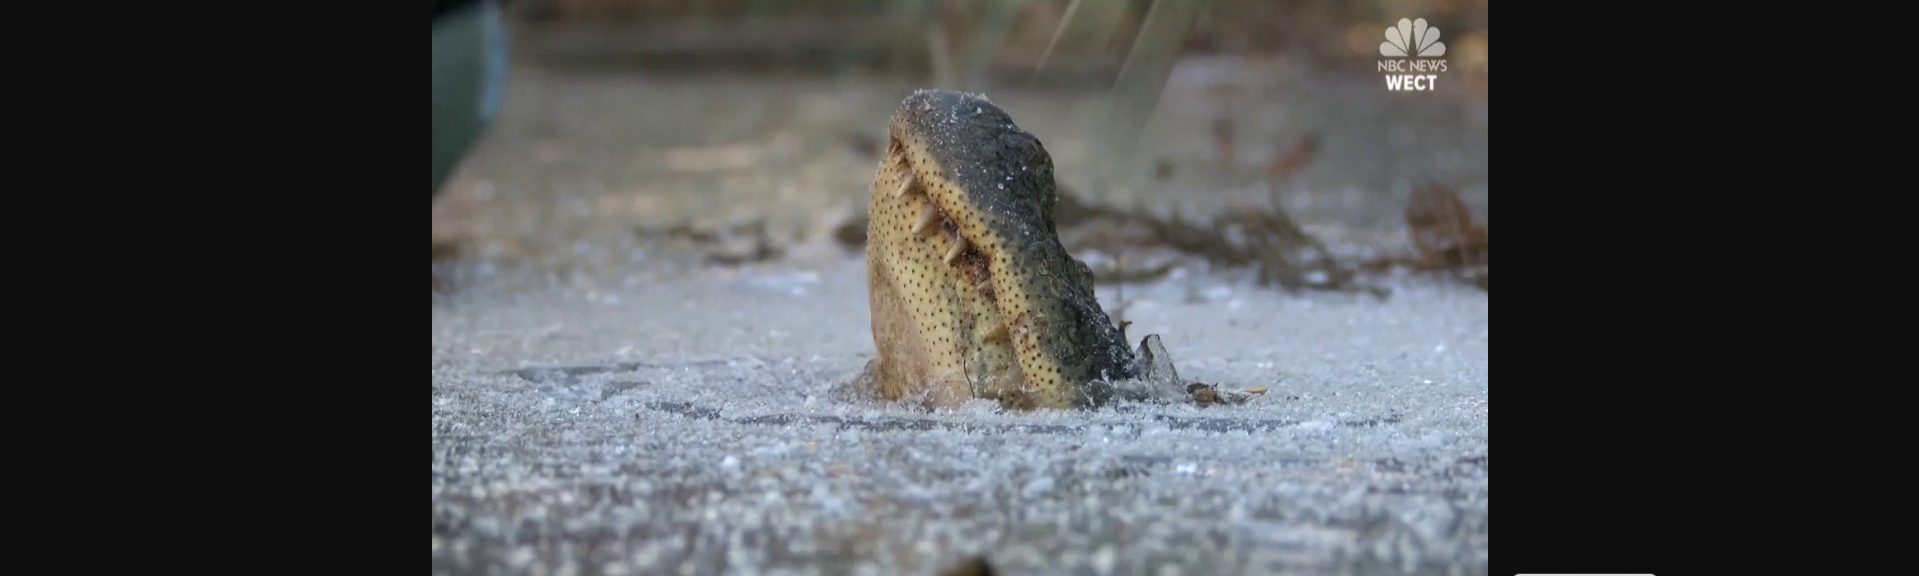 Ο απίστευτος τρόπος με τον οποίο επιβιώνουν οι αλιγάτορες στους πάγους (βίντεο)